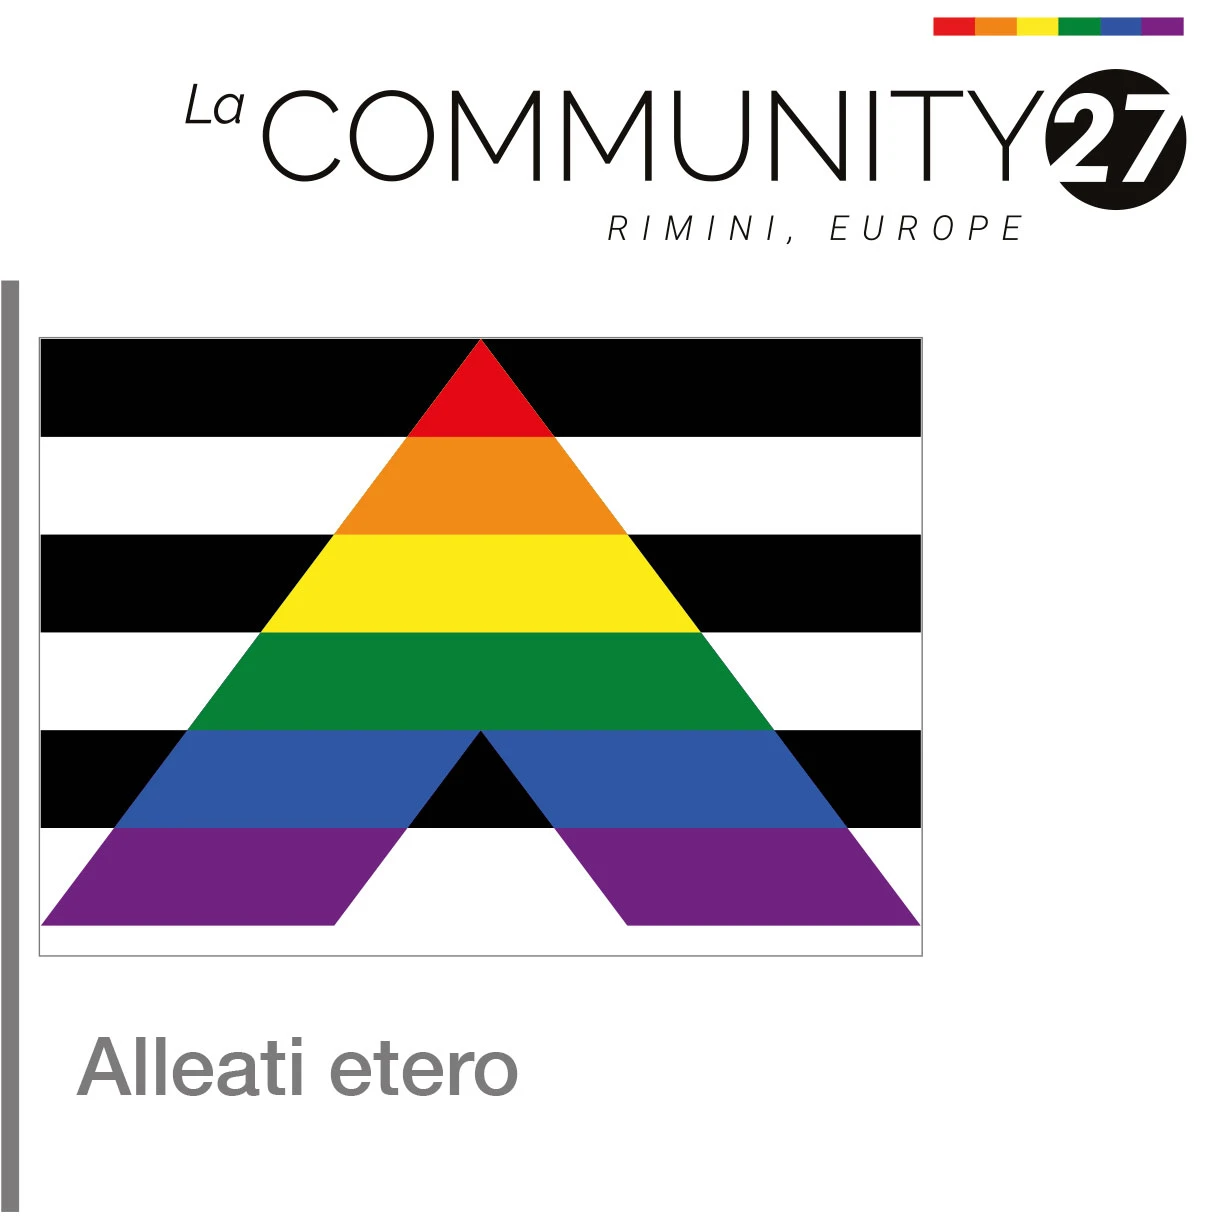 Alleati etero - bandiera LGBTQ in uso - La Communty 27